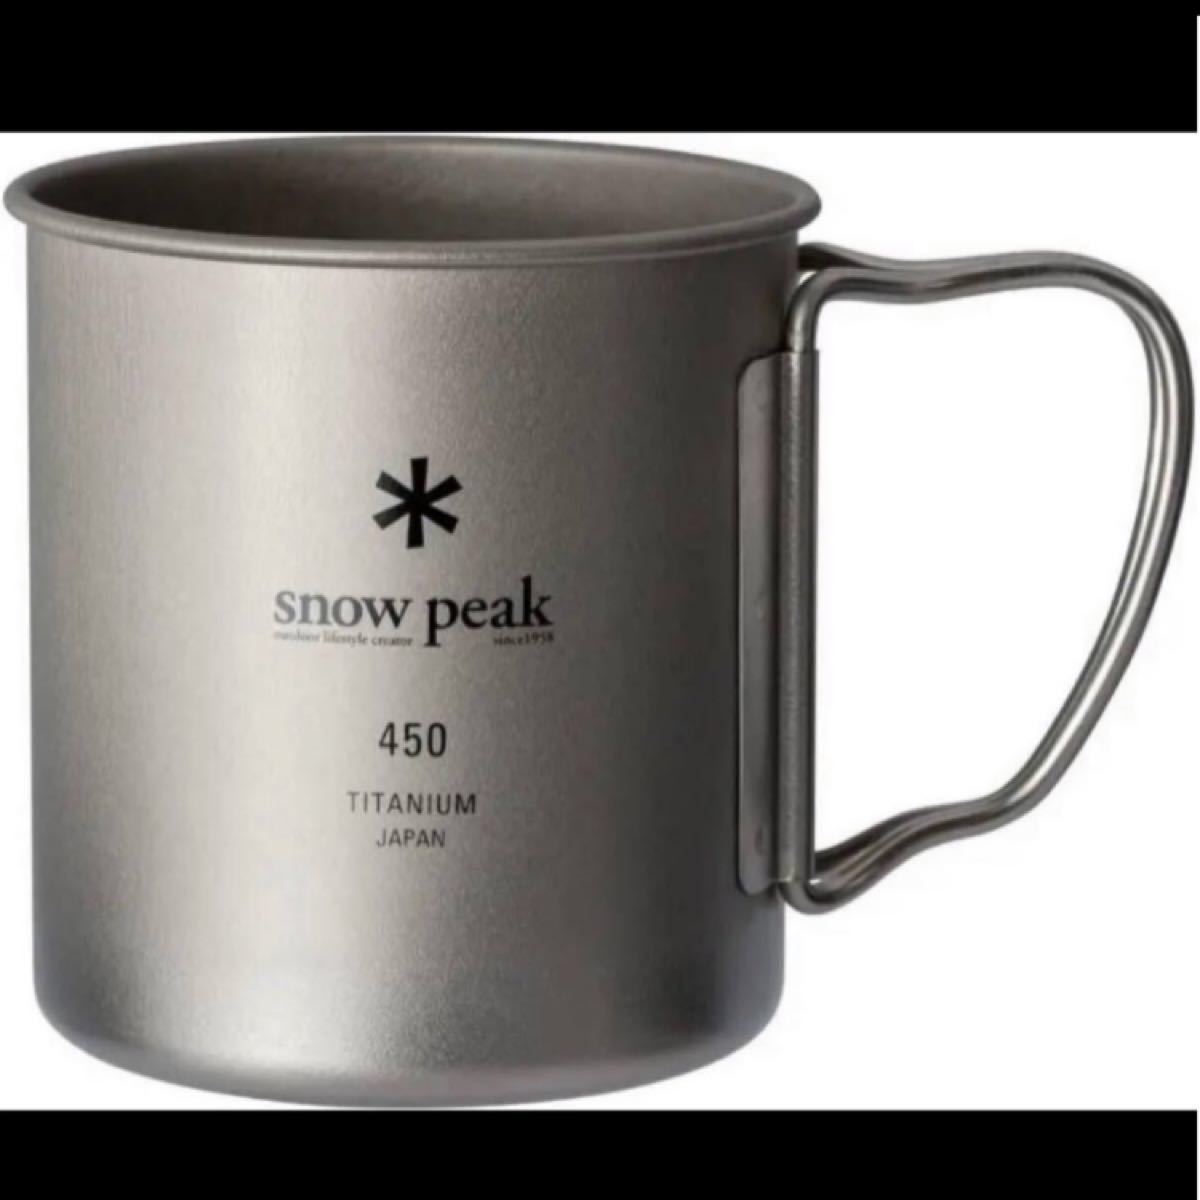 スノーピーク マグカップ チタンシングルマグ 450 MG-143 snow peak 【値段交渉不可】